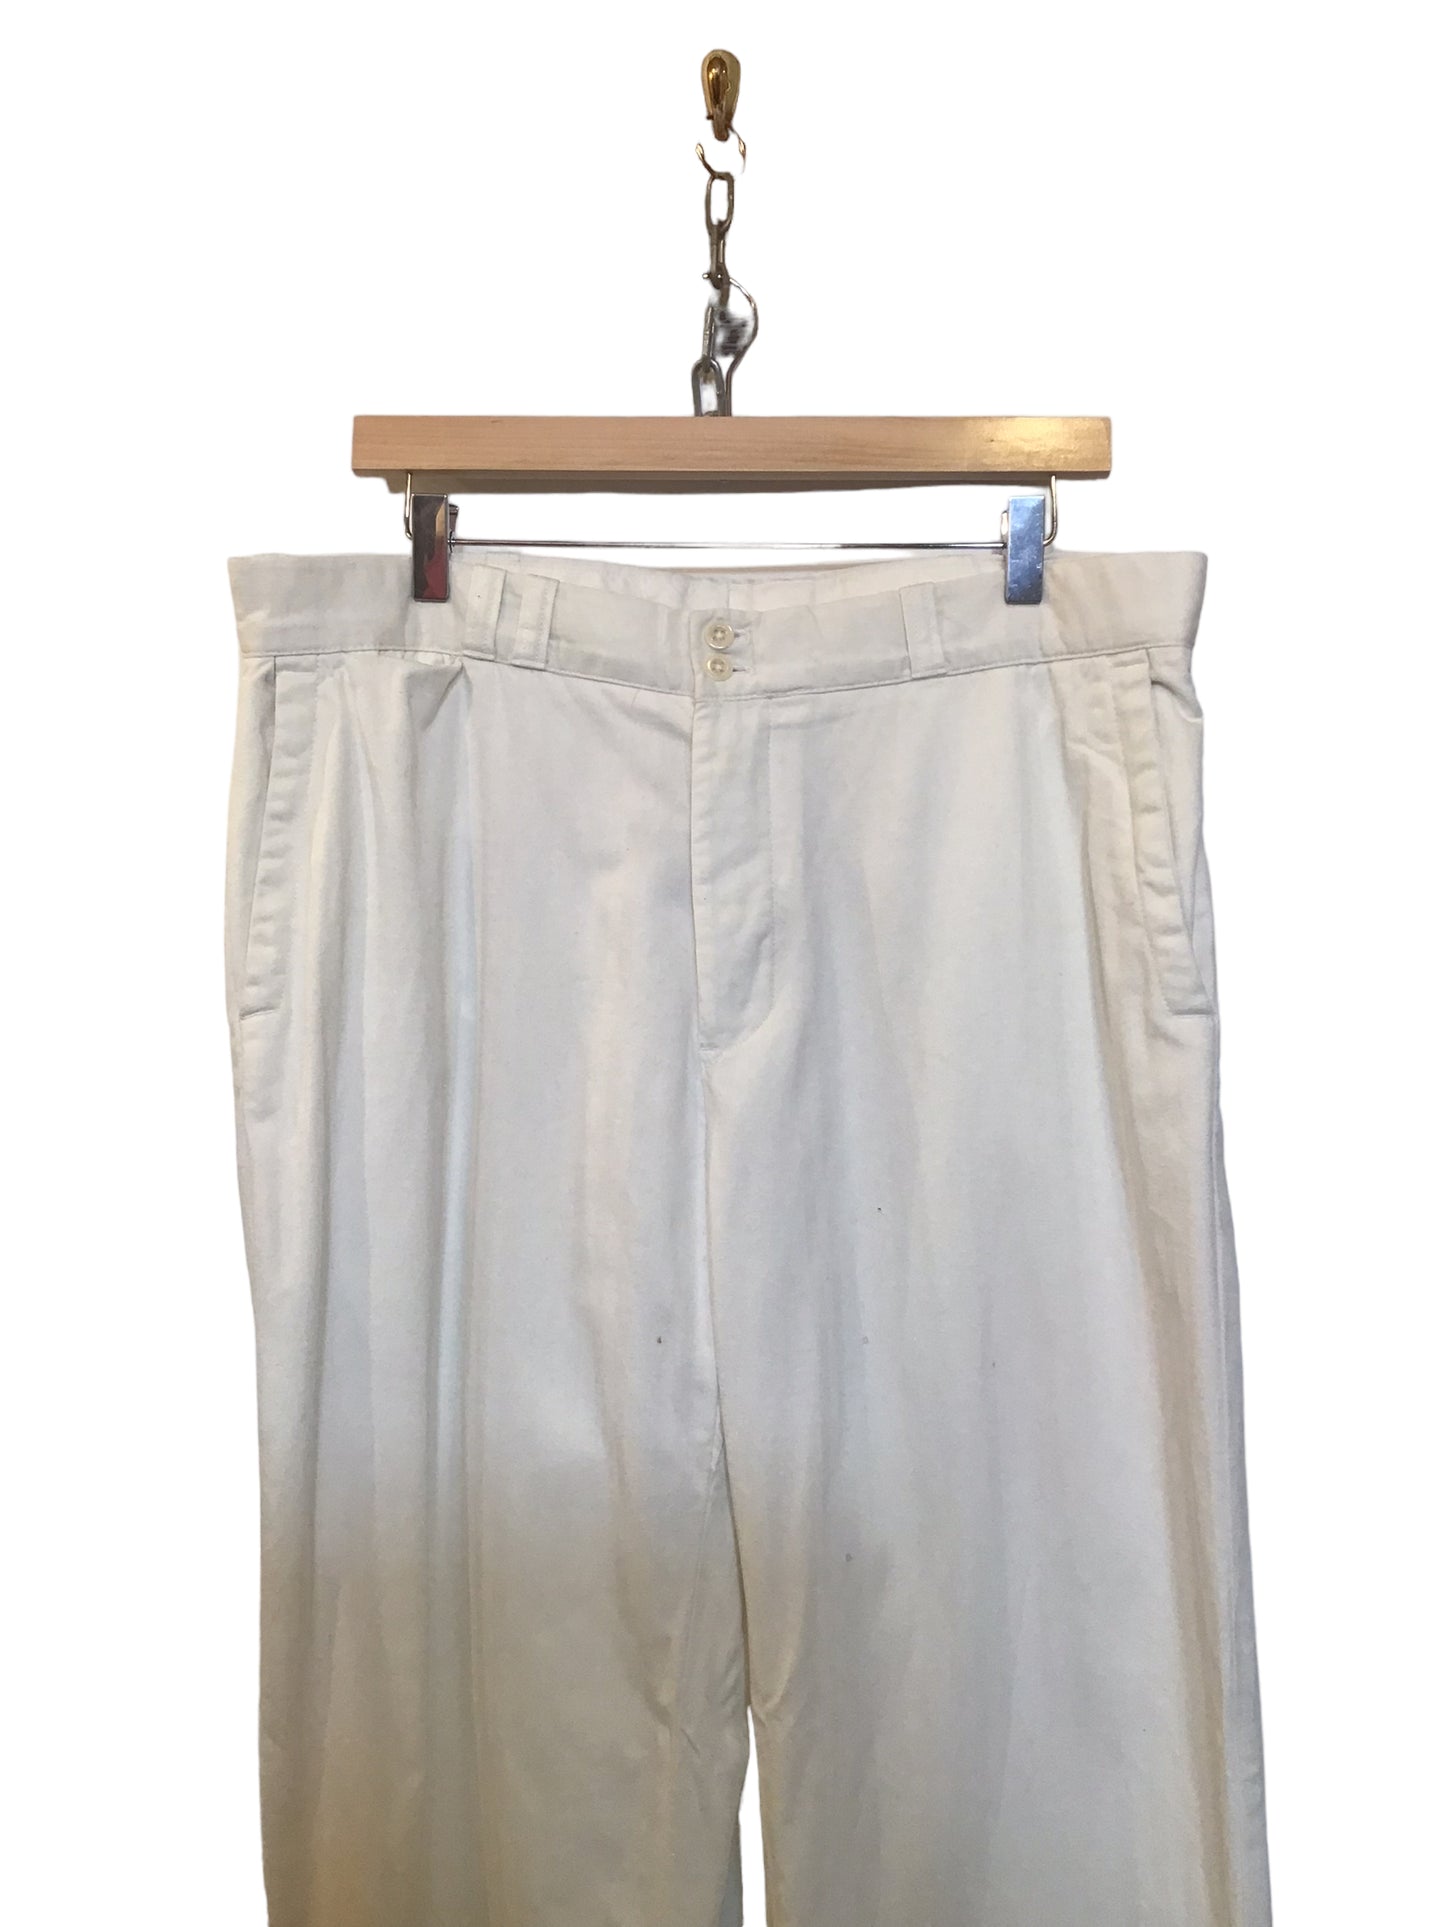 White Cotton Trousers (Size XL)